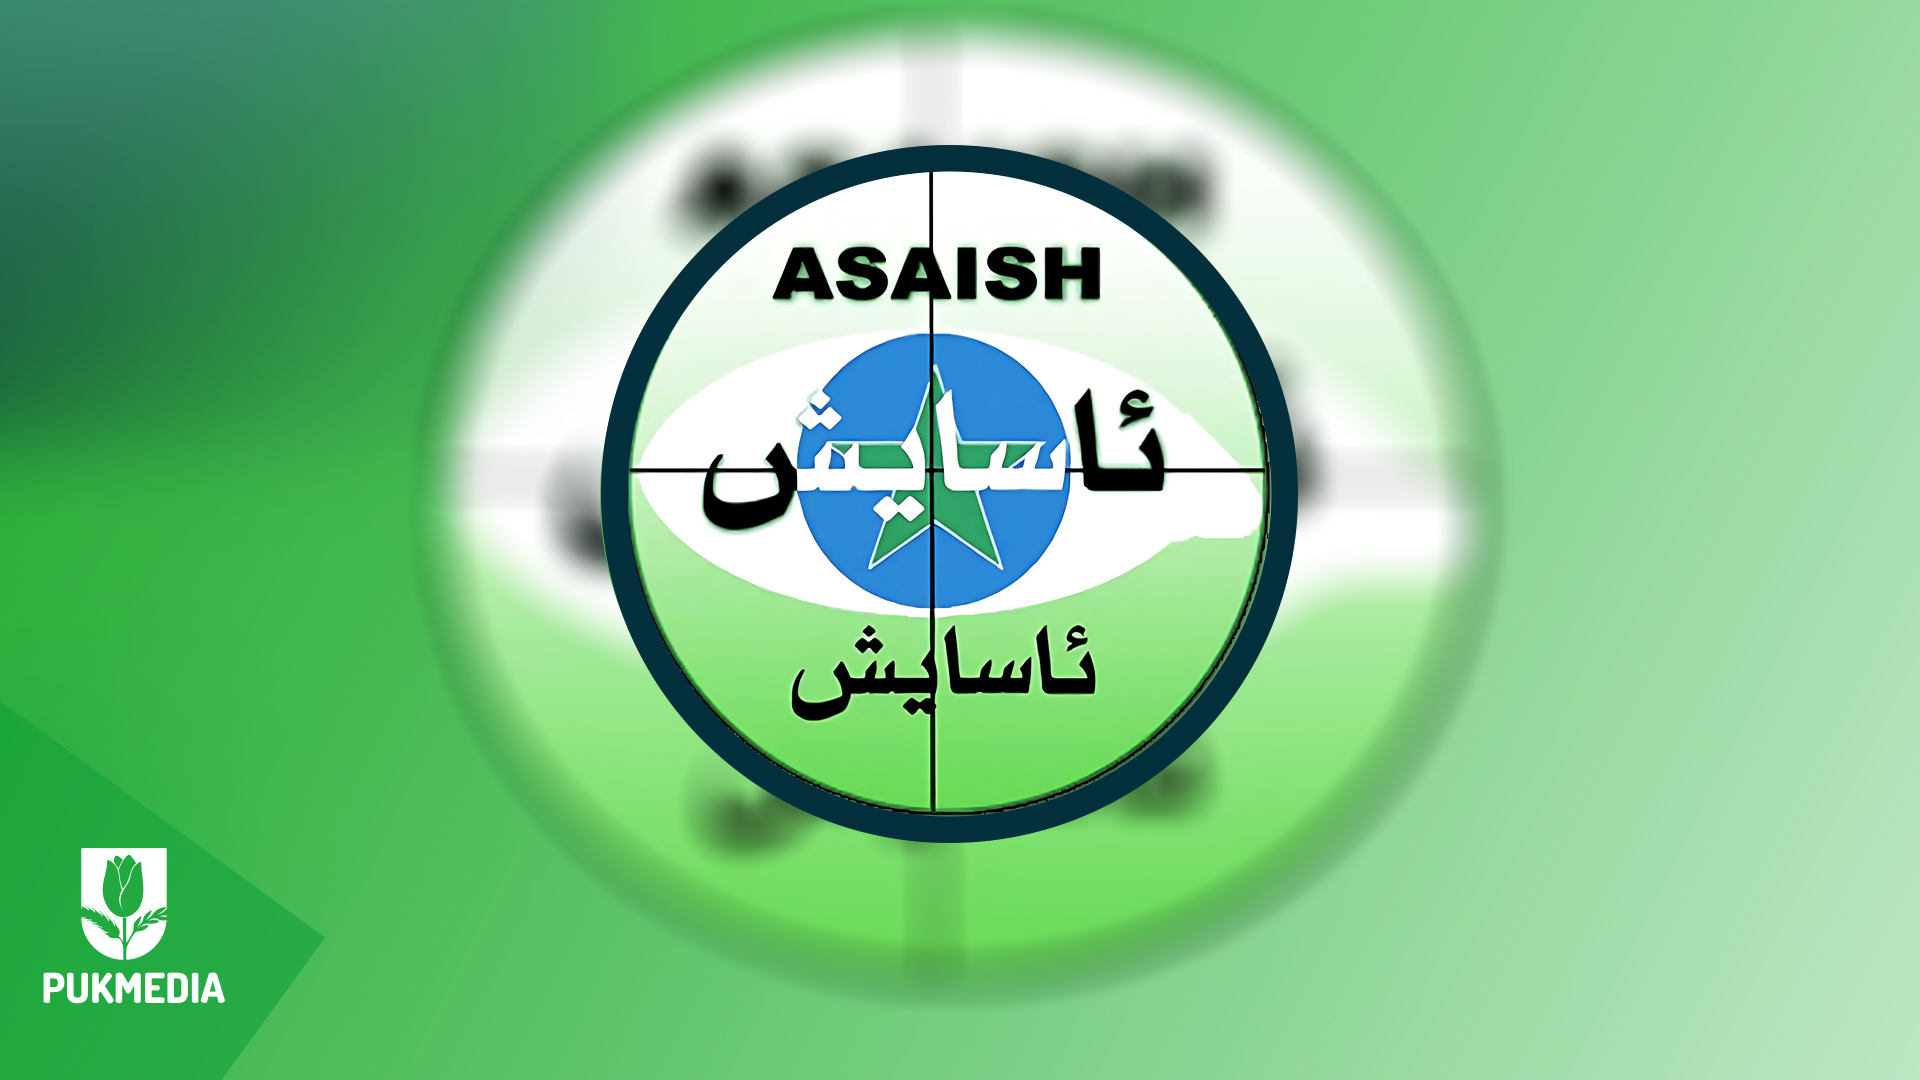 Kurdistan Asayish Agency logo